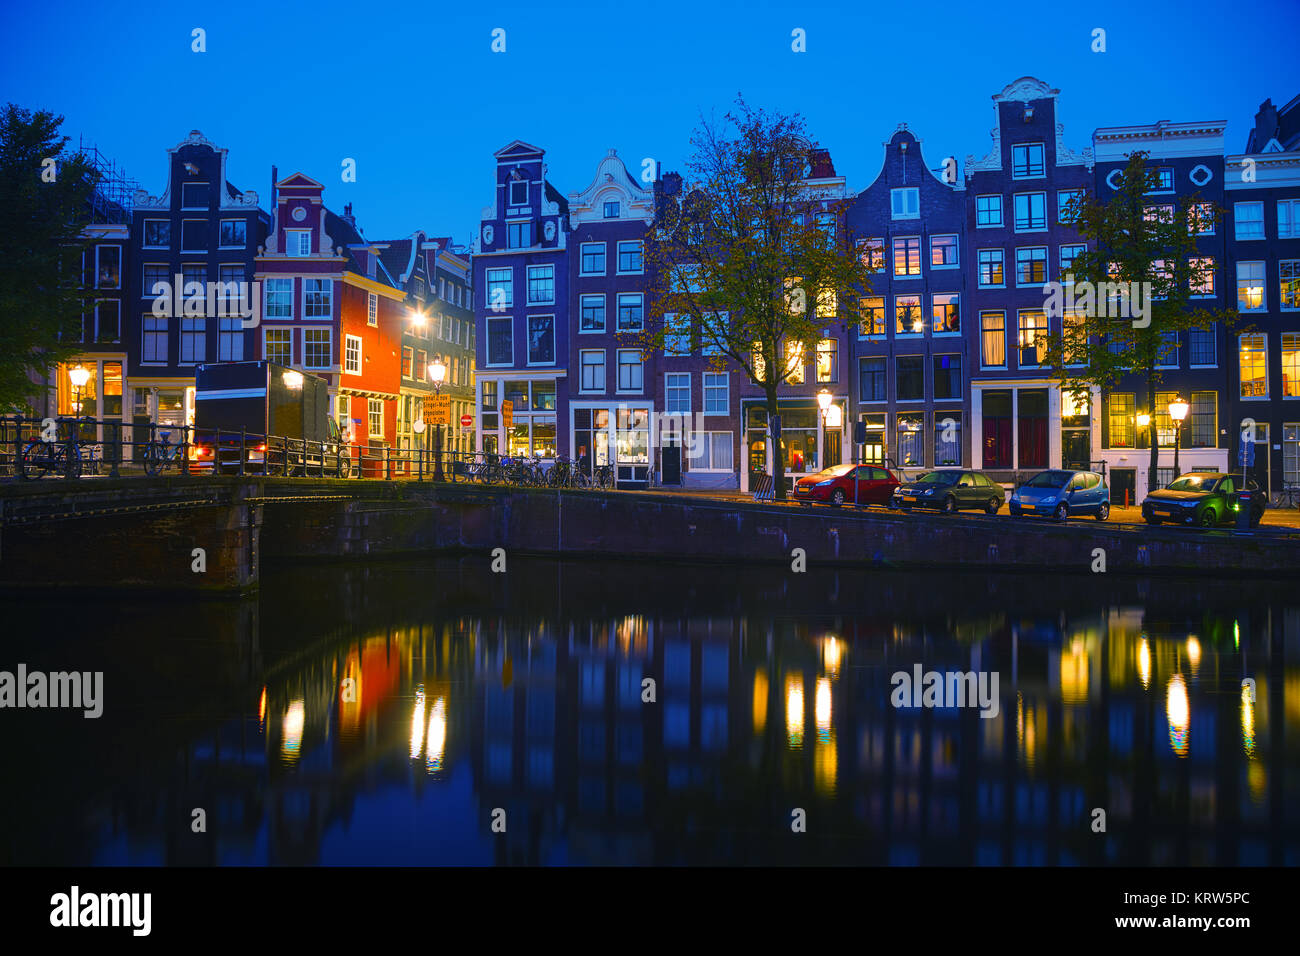 Vue sur la ville avec des canaux d'Amsterdam Banque D'Images